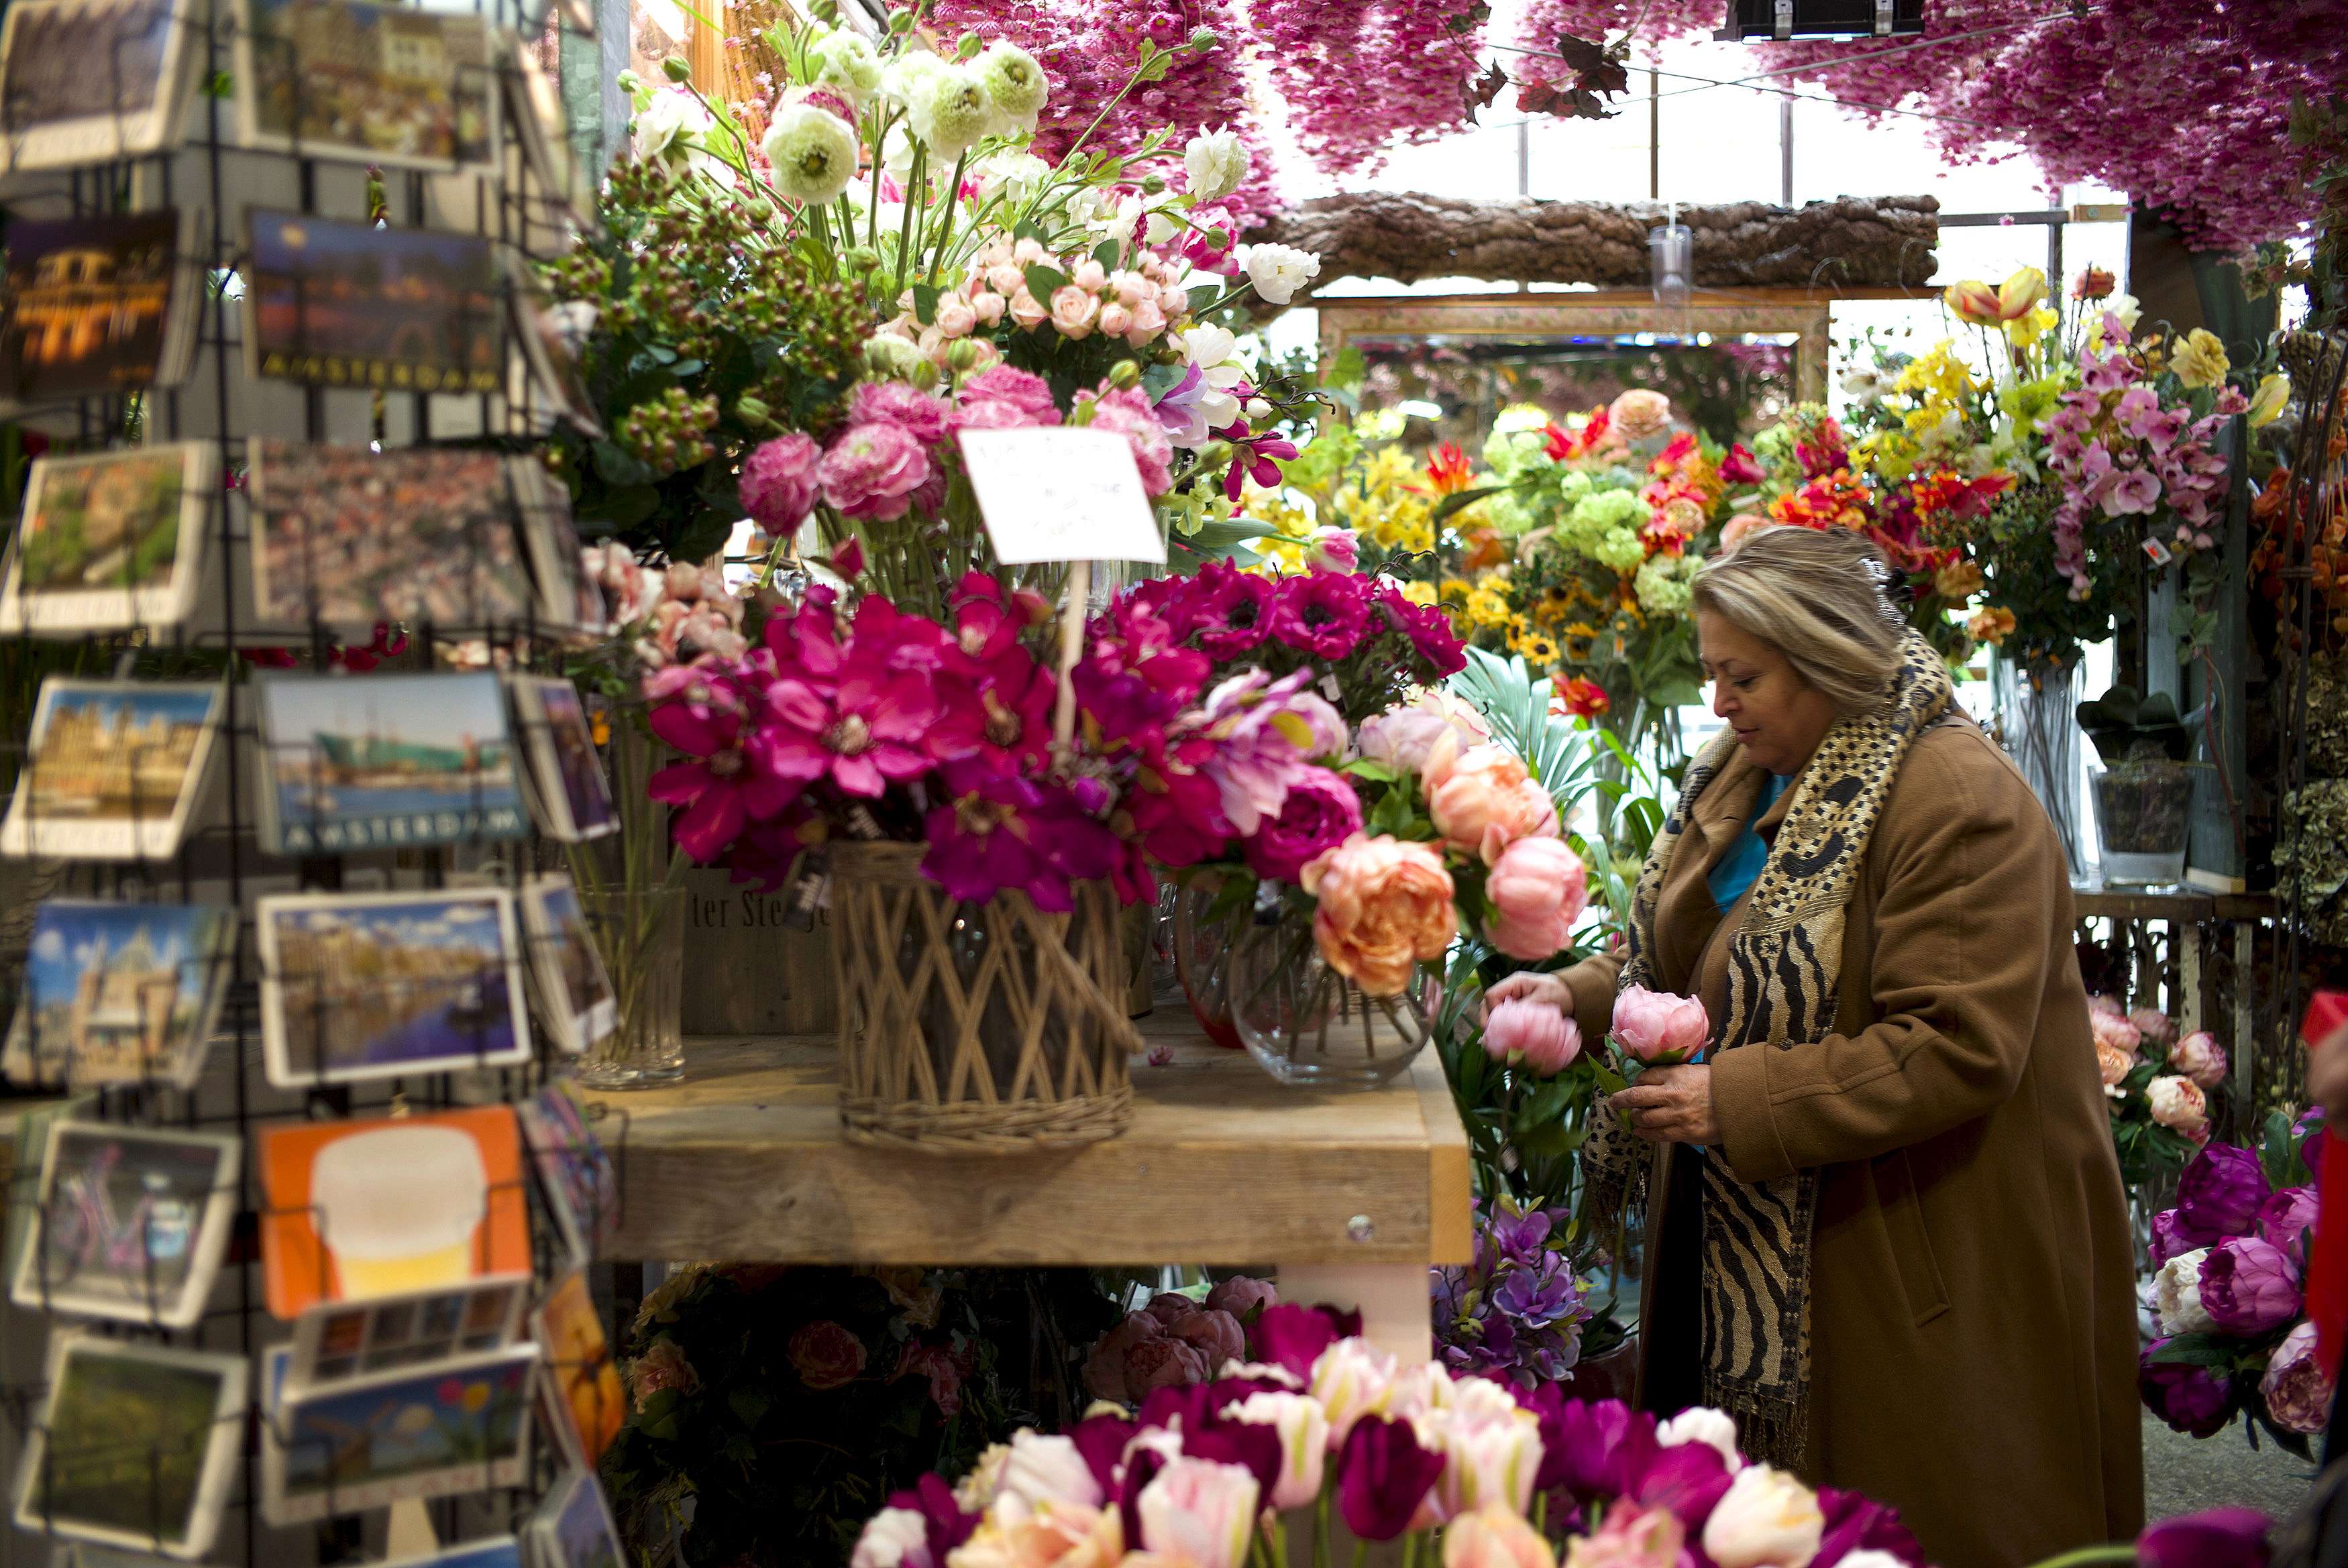 Noël: la vente de sapins possible dès vendredi pour les fleuristes, annonce Julien Denormandie